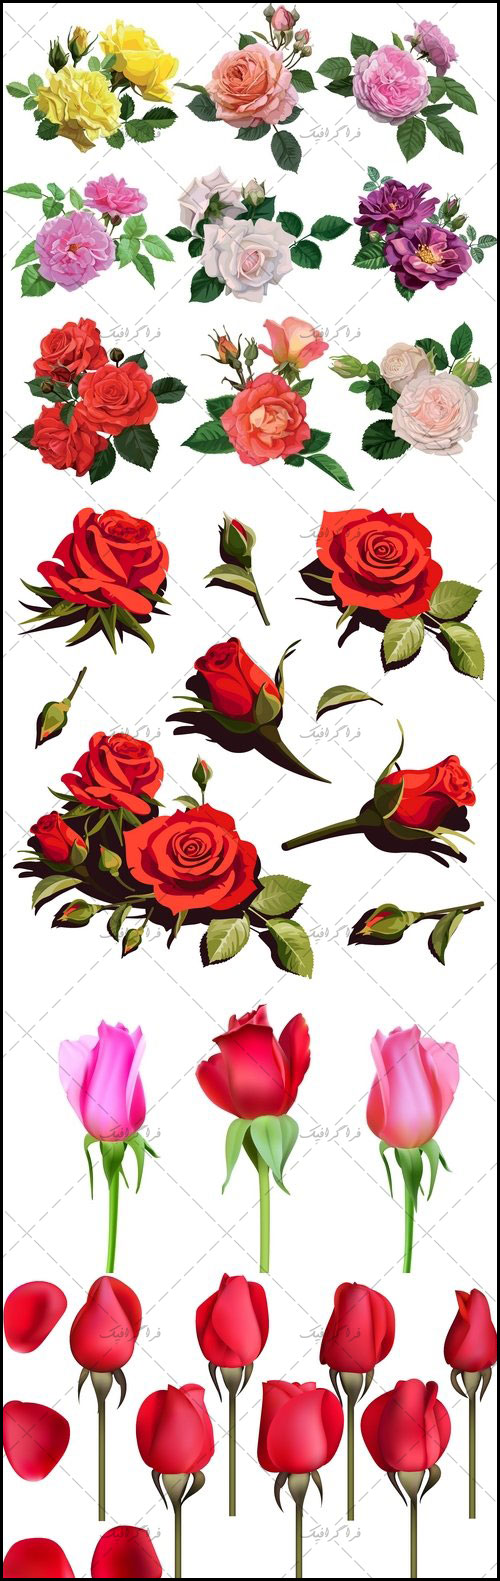 دانلود وکتور های گل رز - Rose Flowers Vector